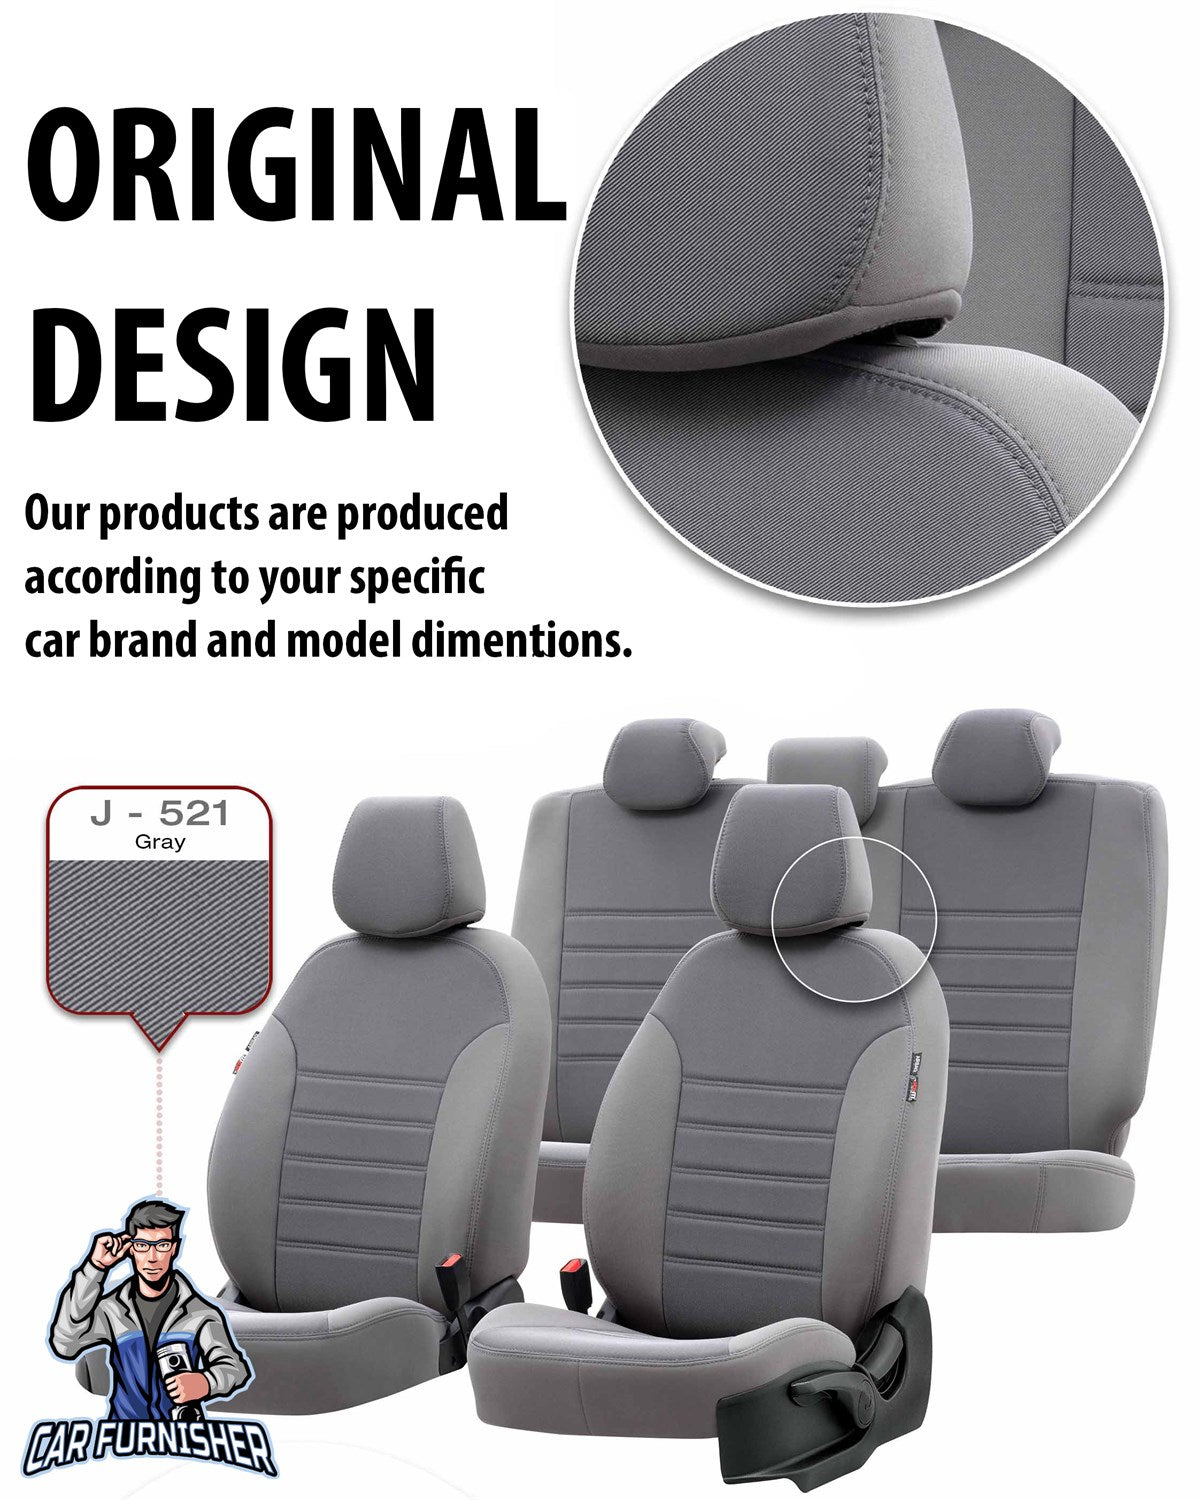 Suzuki Vitara Seat Covers Original Jacquard Design Smoked Black Jacquard Fabric